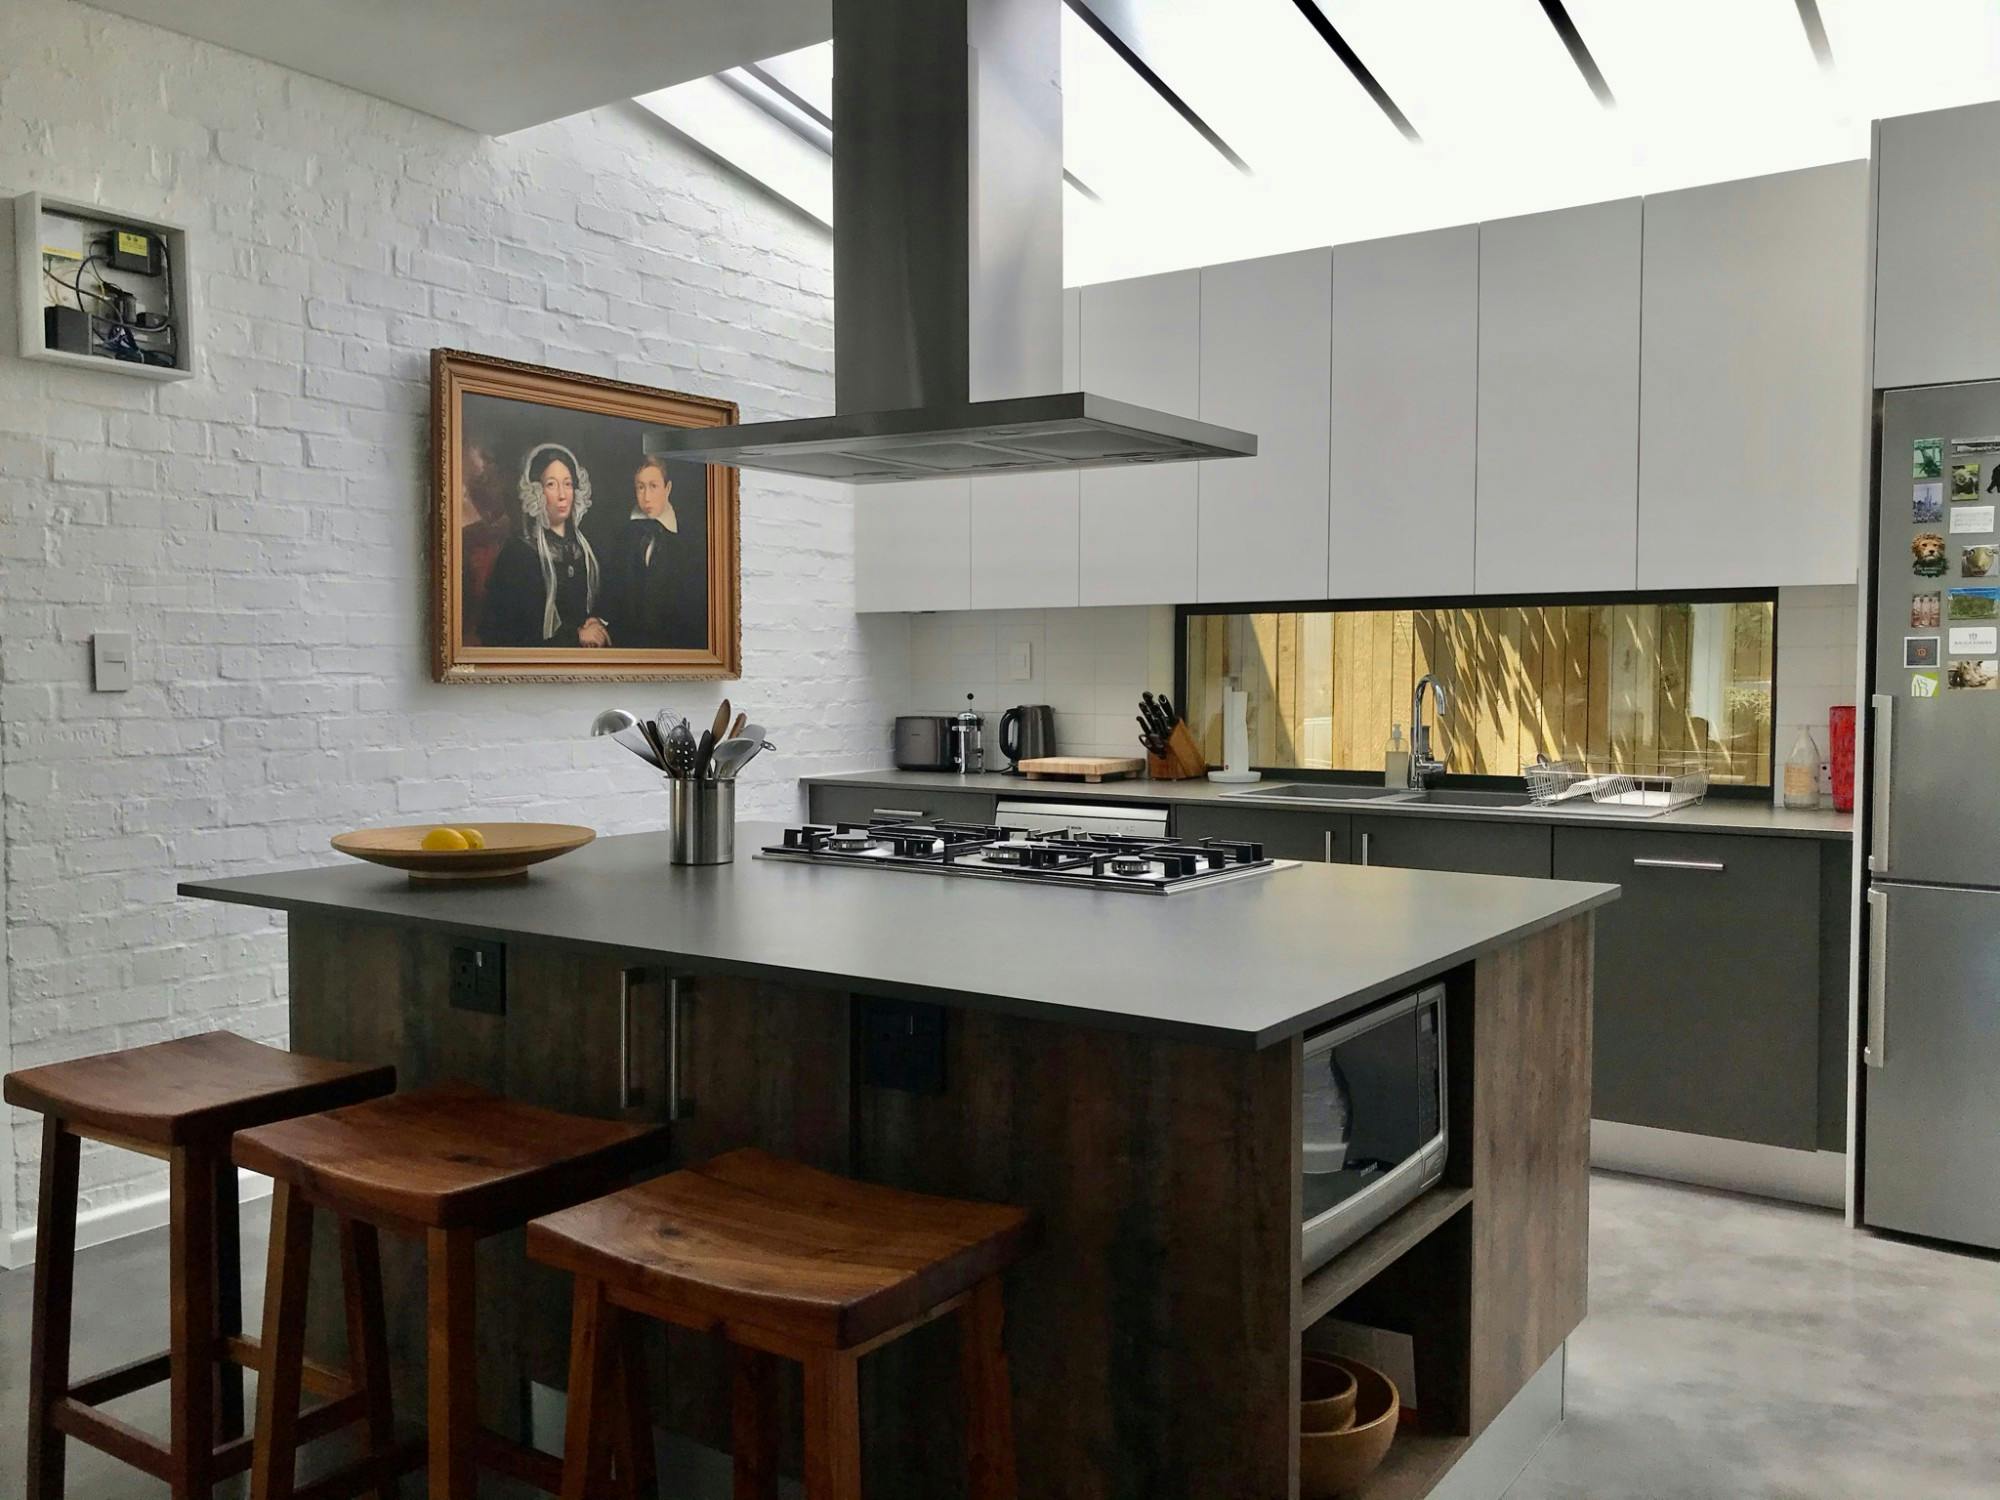 Numero immagine 45 della sezione corrente di The interior designer Staci Munic designs her dream home using Silestone di Cosentino Italia